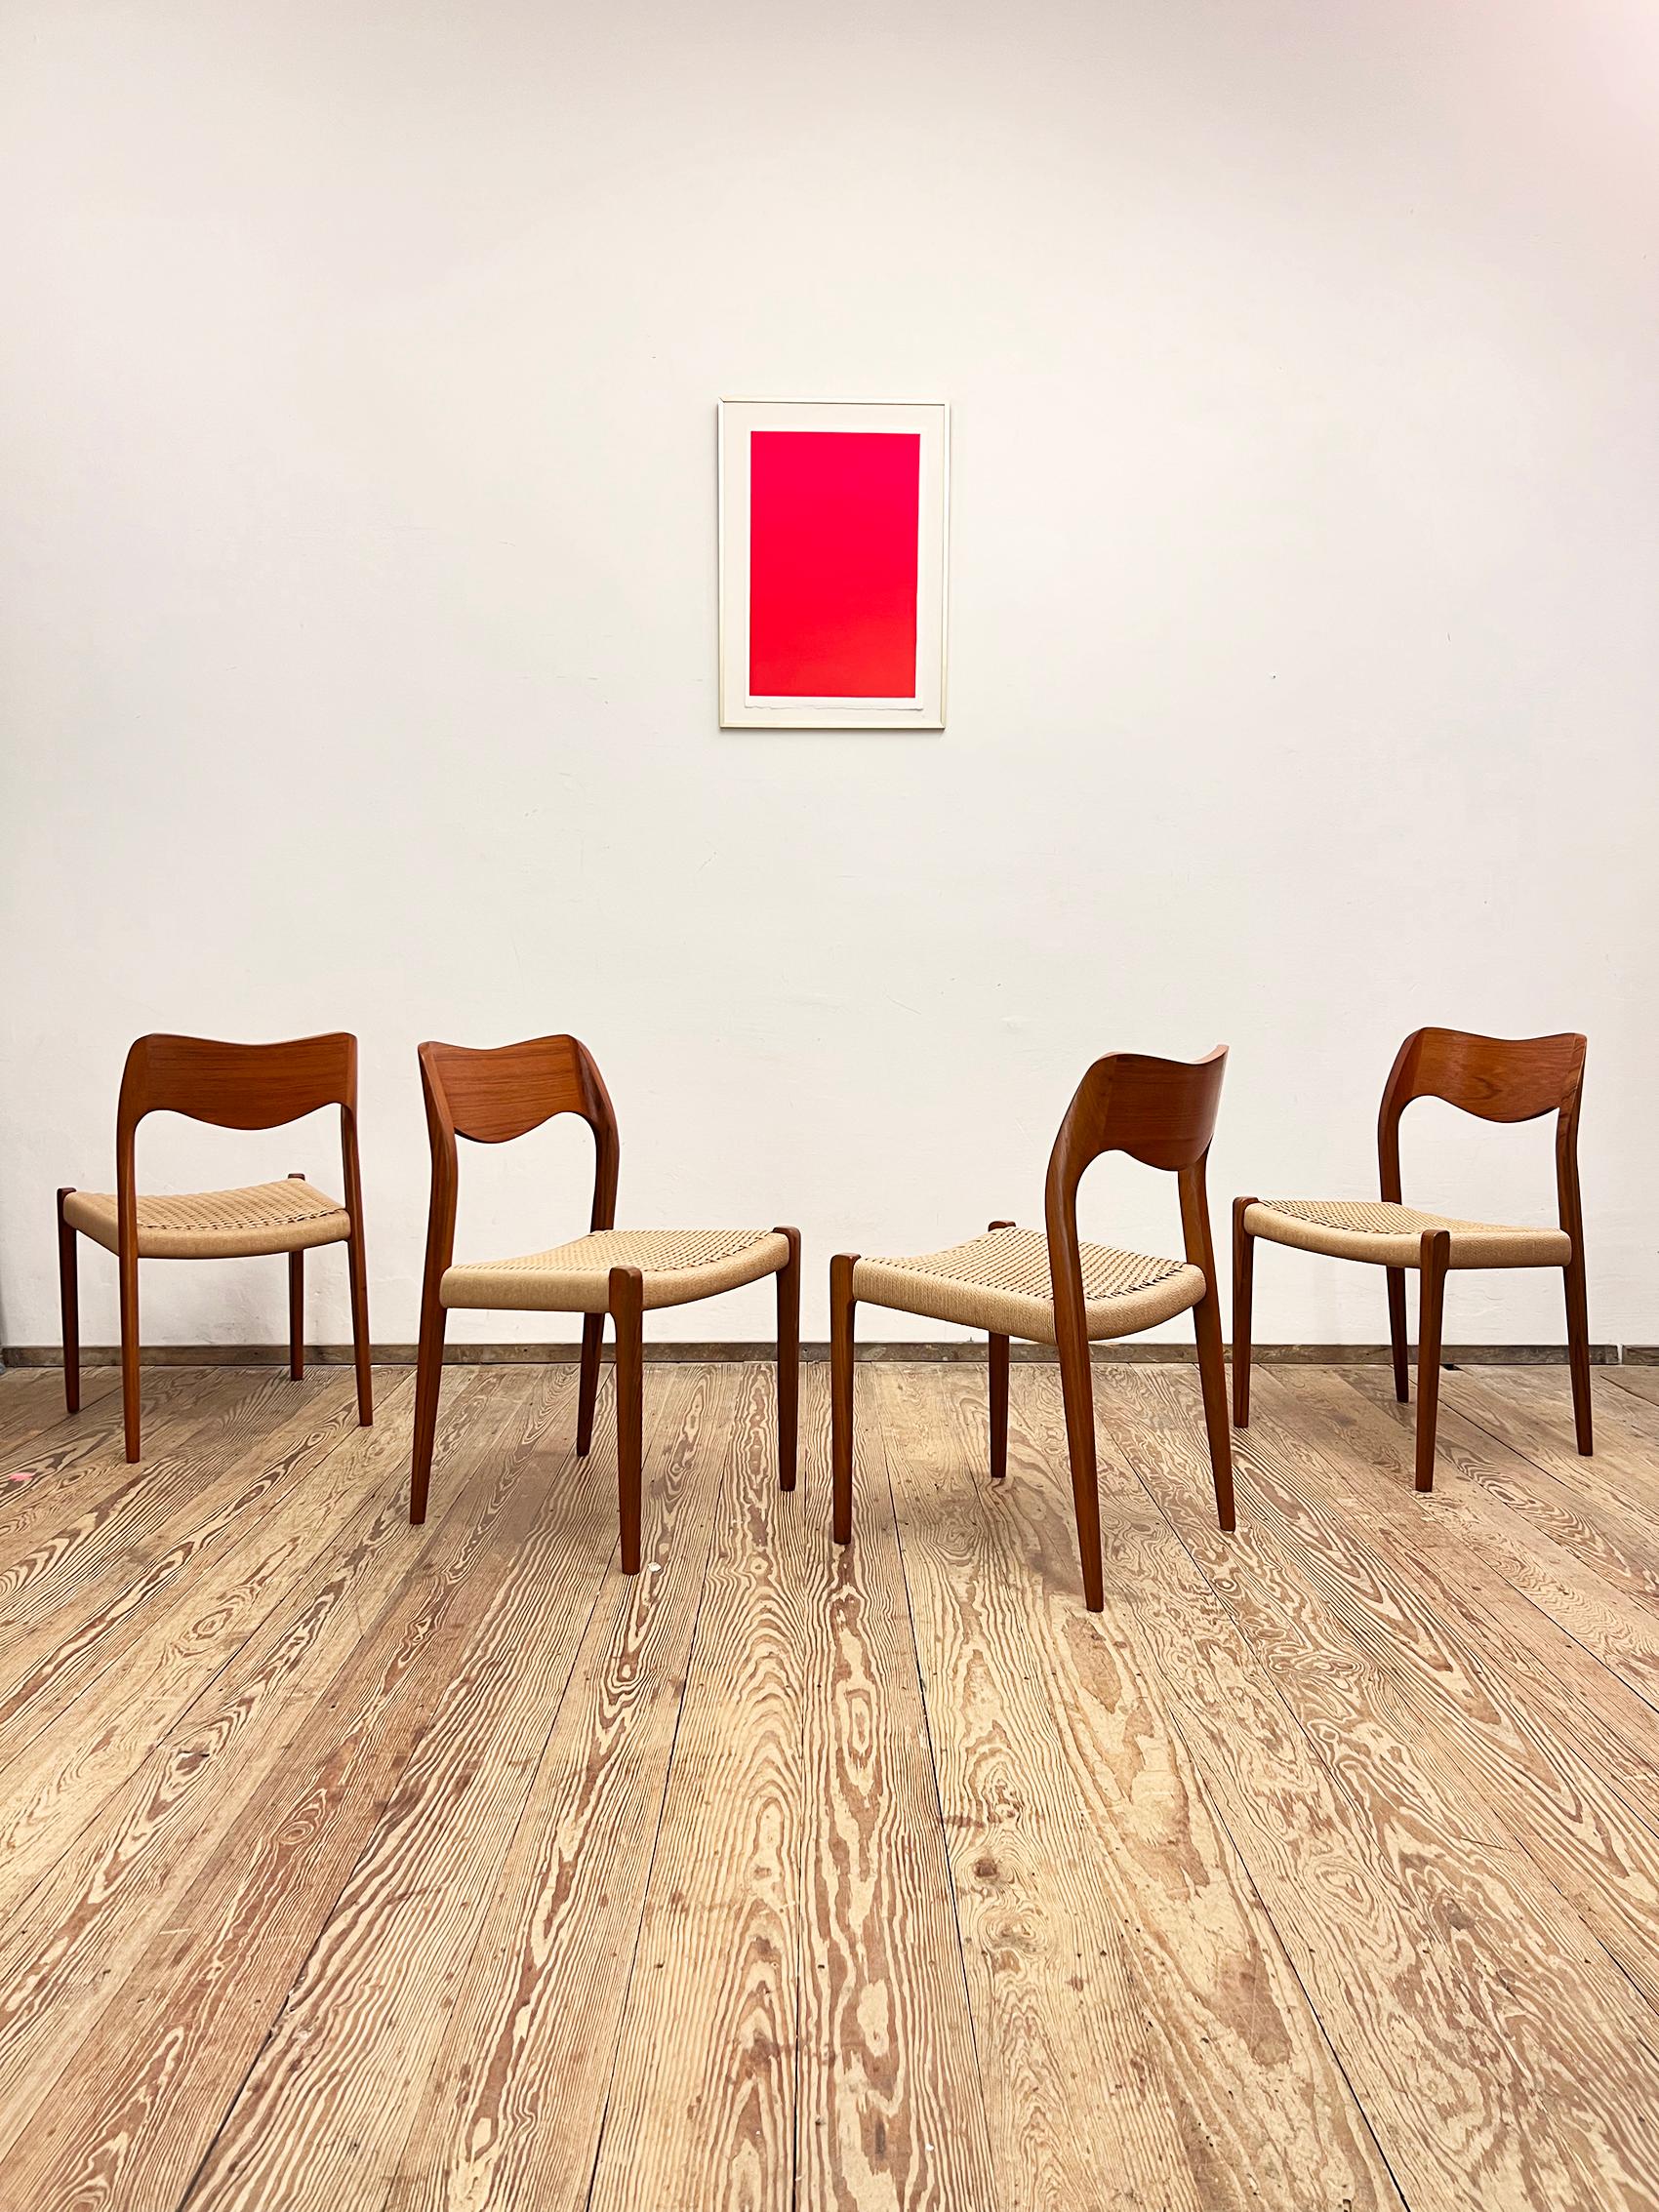 Abmessungen 49 x 49 x 79 x 44cm (Breite x Tiefe x Höhe x Sitzhöhe)

Dänisches Design von Niels O. Møller, hergestellt von J. l. Møller in Dänemark. Das Set besteht aus 4 Esszimmerstühlen aus Teakholz, teilweise furniert und mit Papierkordelsitzen.